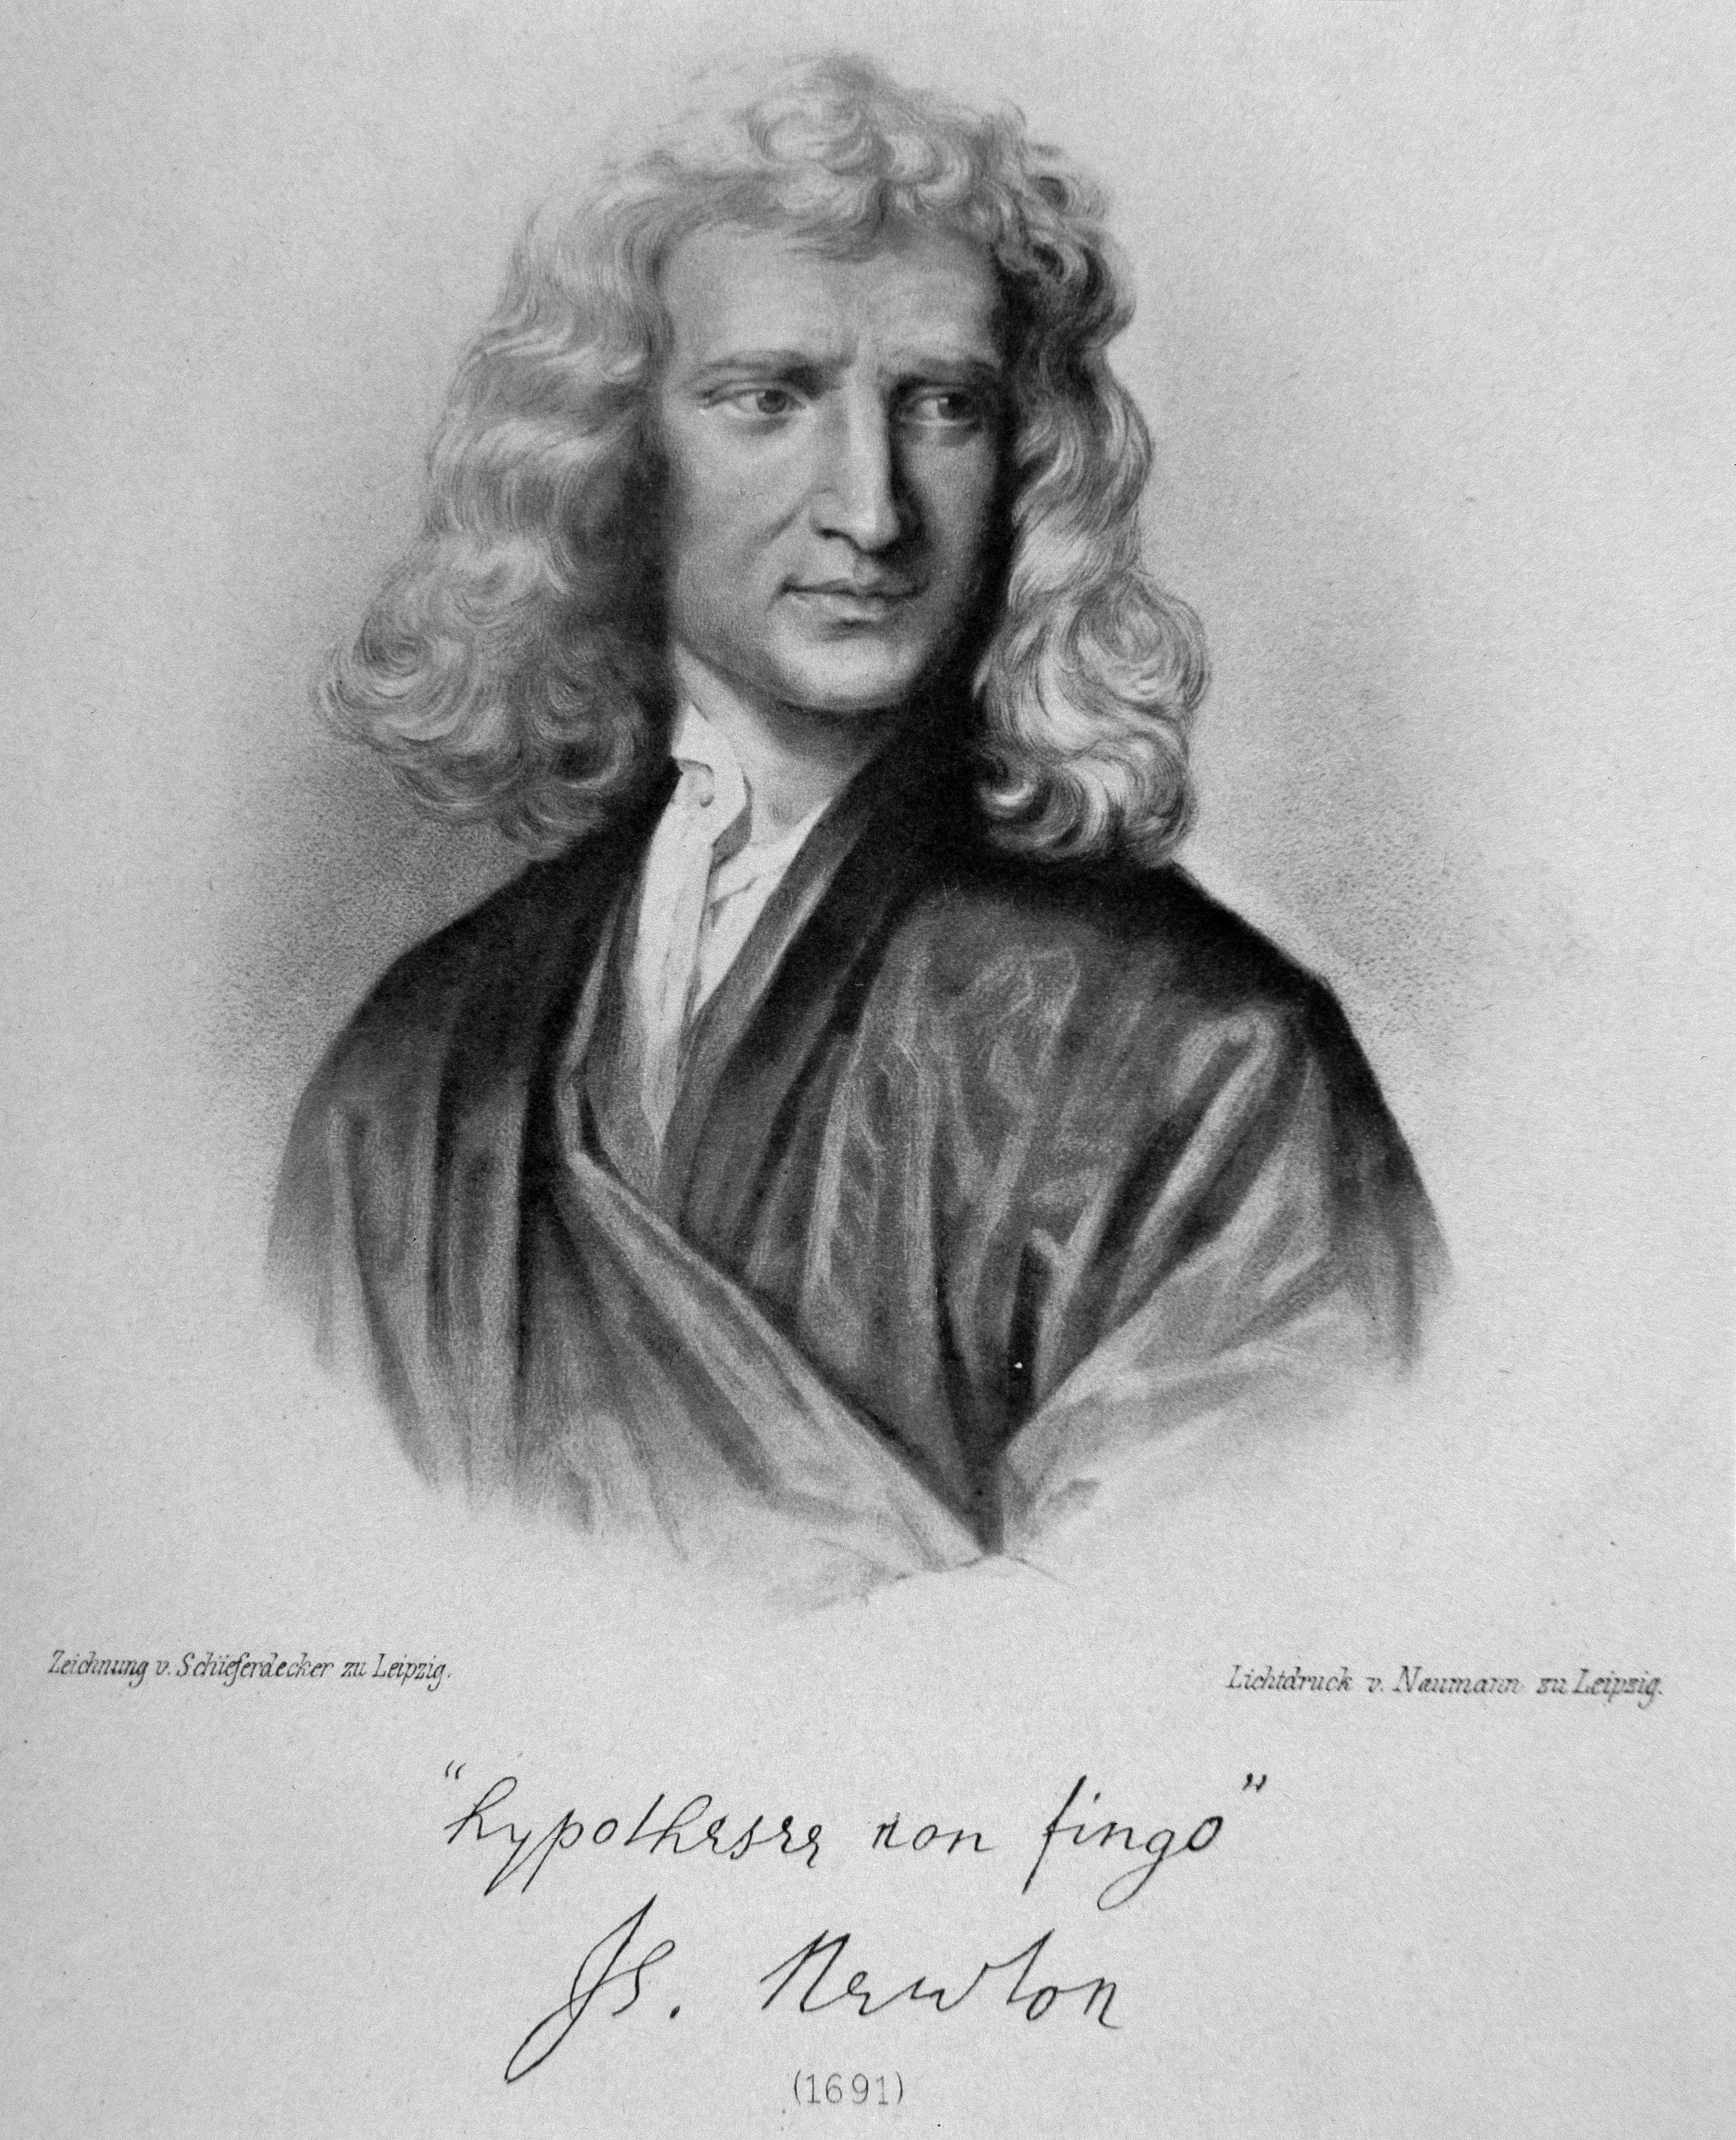 Grabado con la imagen de Sir Isaac Newton hecho en 1691